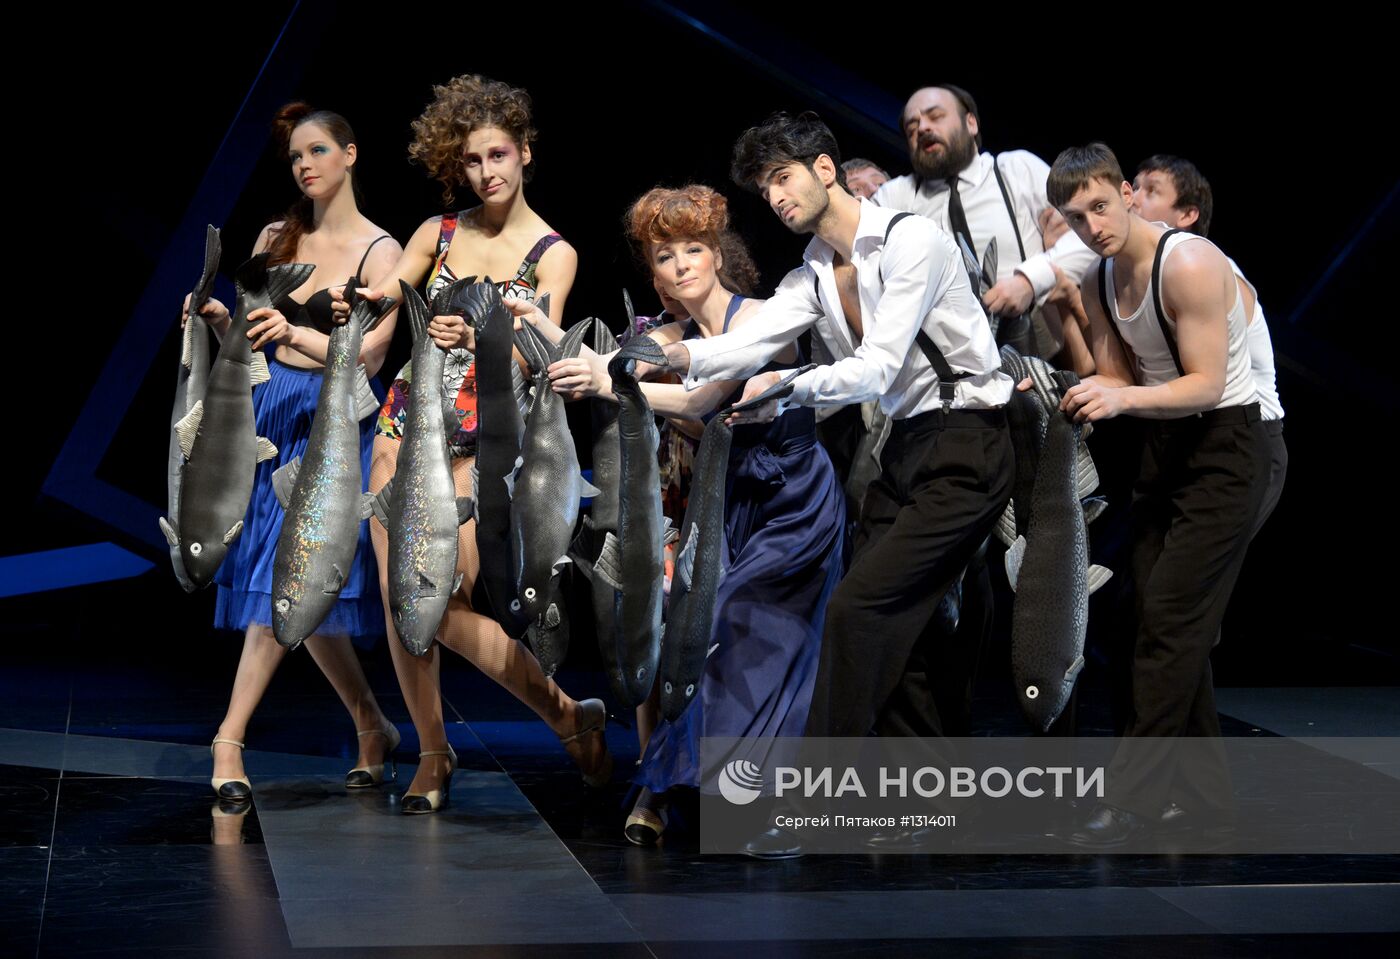 Ответы city-lawyers.ru: Pole Dance - это ведь танец шлюх?